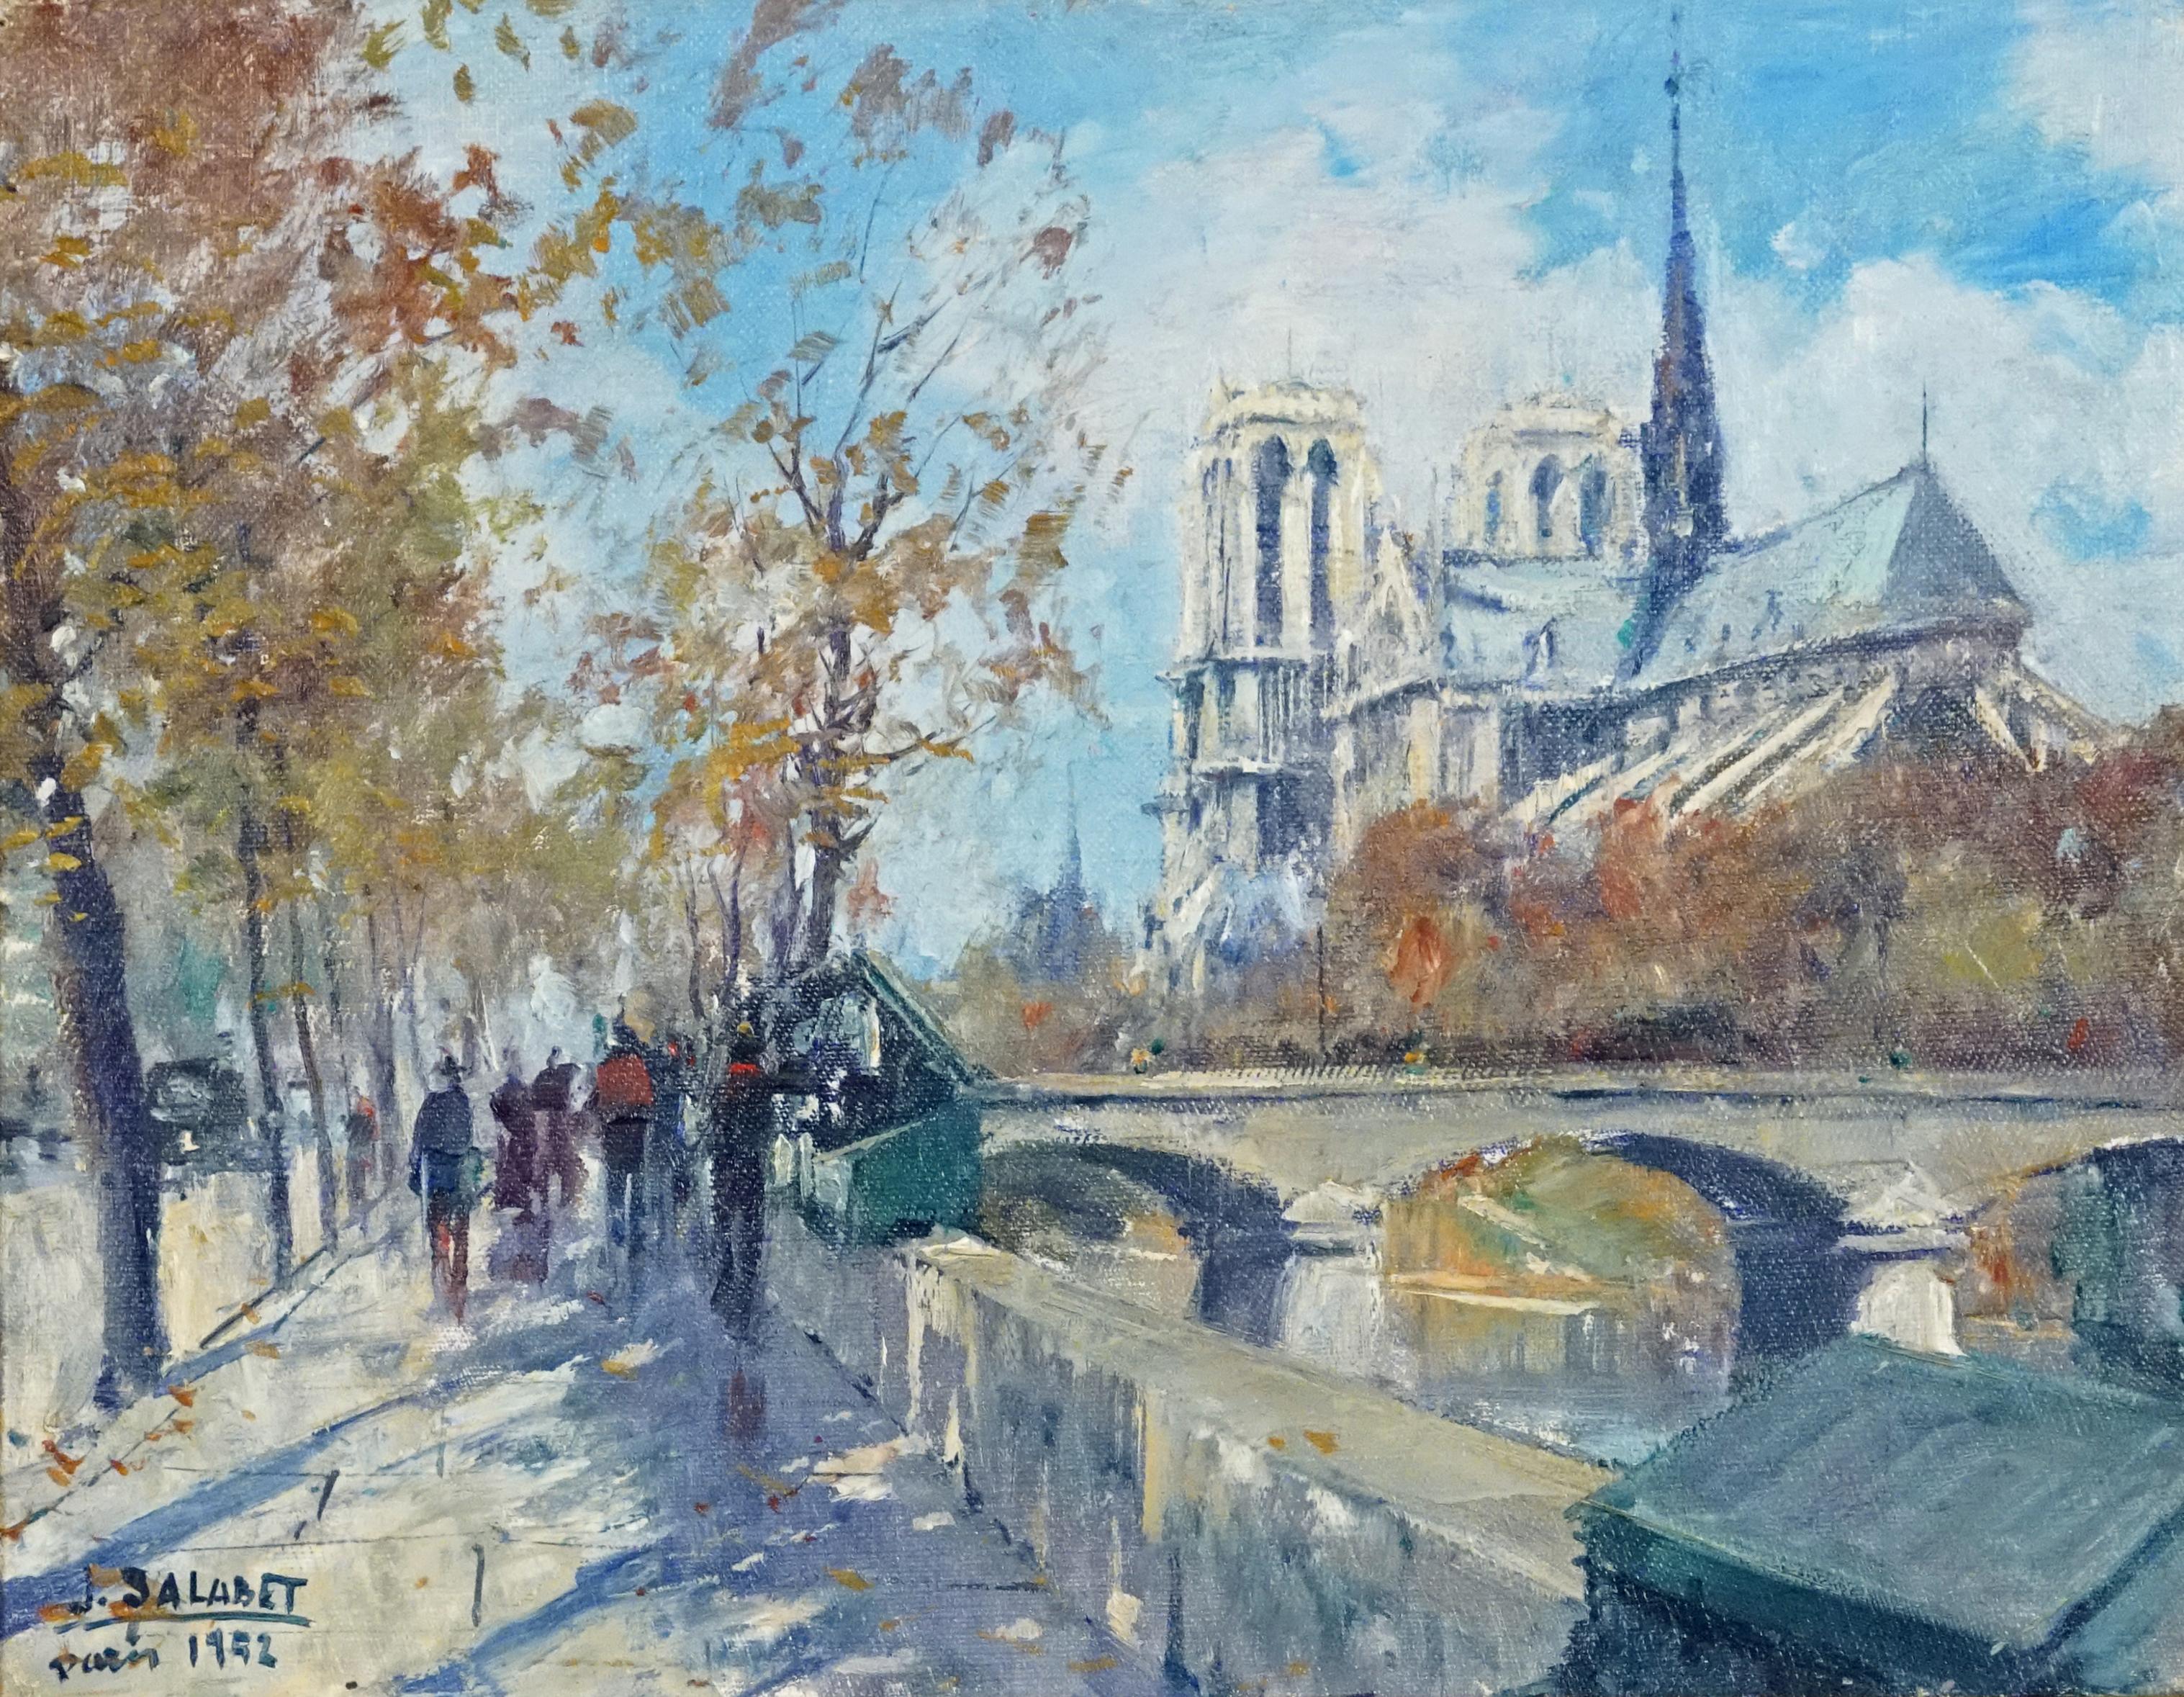 Jean Salabet Landscape Painting – Notre Dame